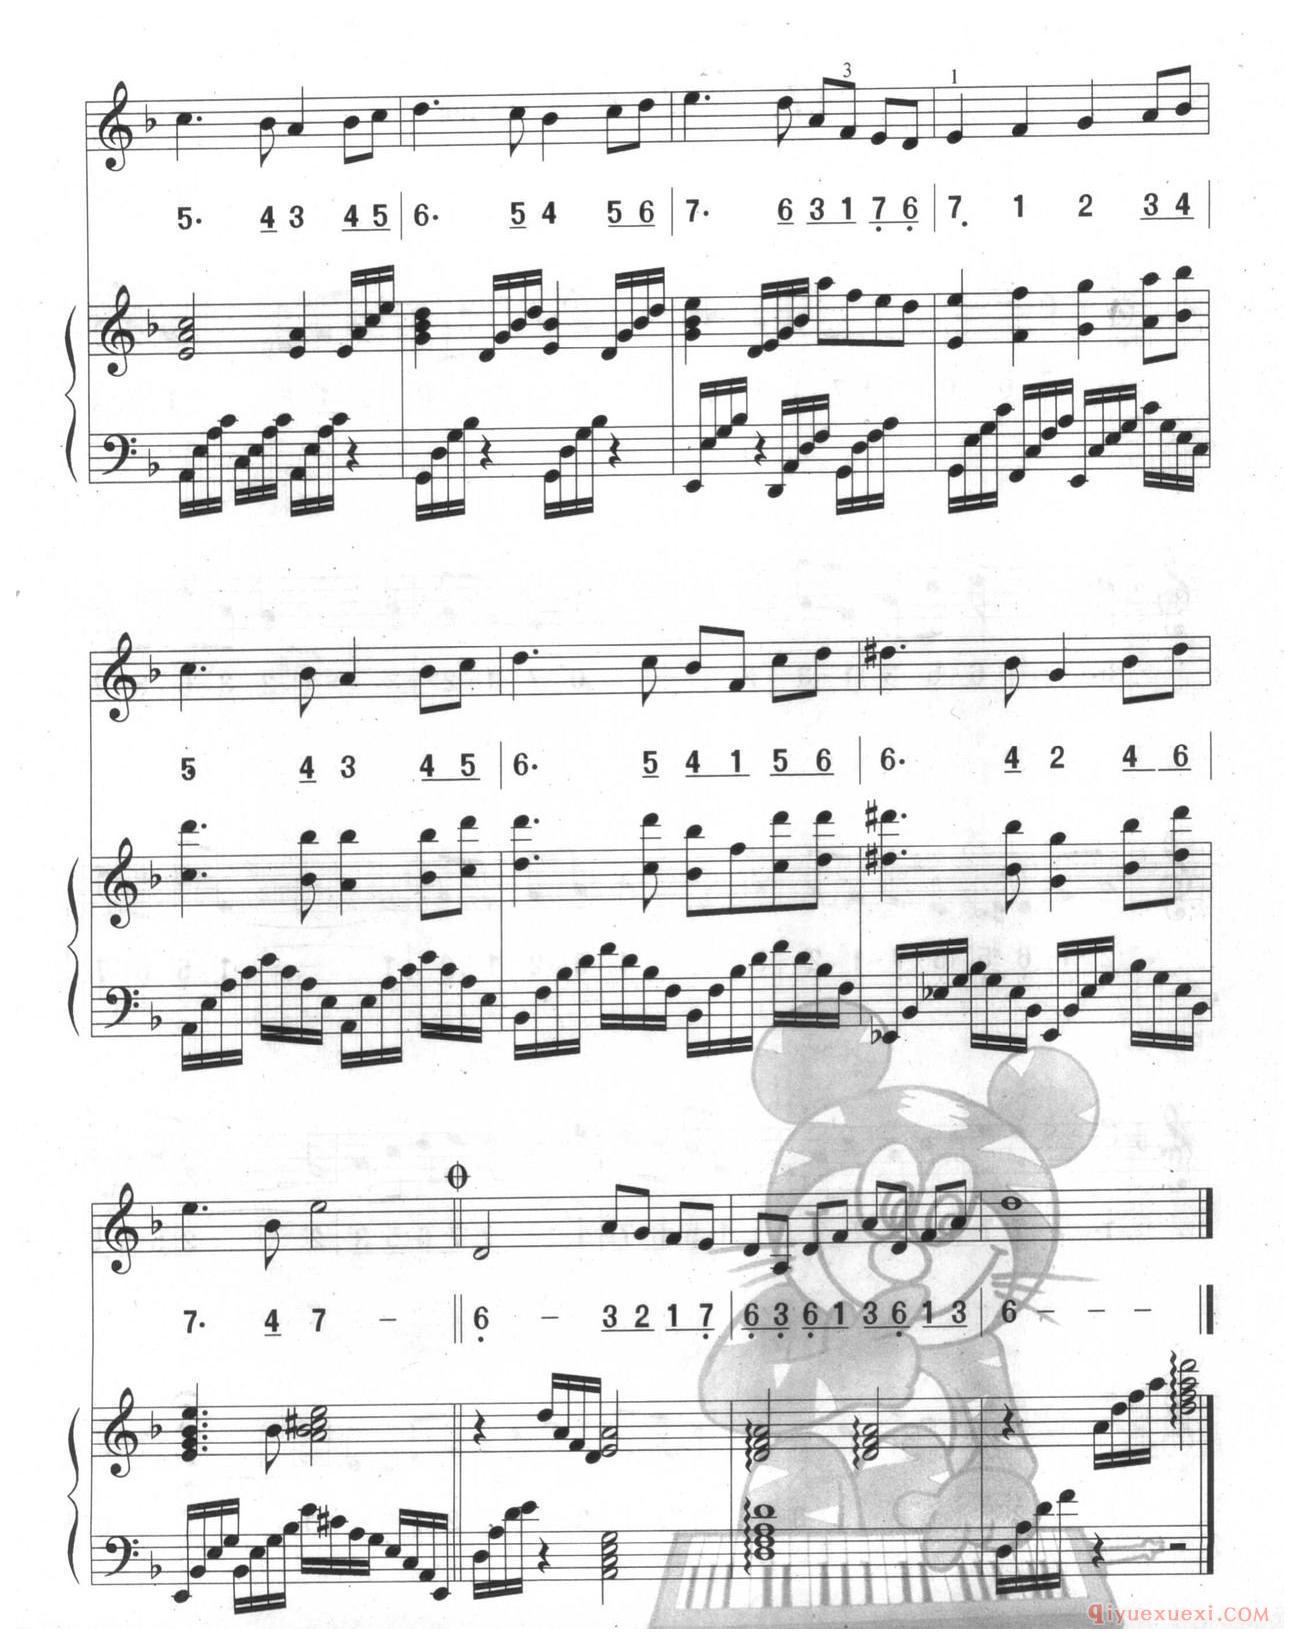 口风琴多声部乐曲《天鹅湖序曲(总谱)》加入打击乐的练习